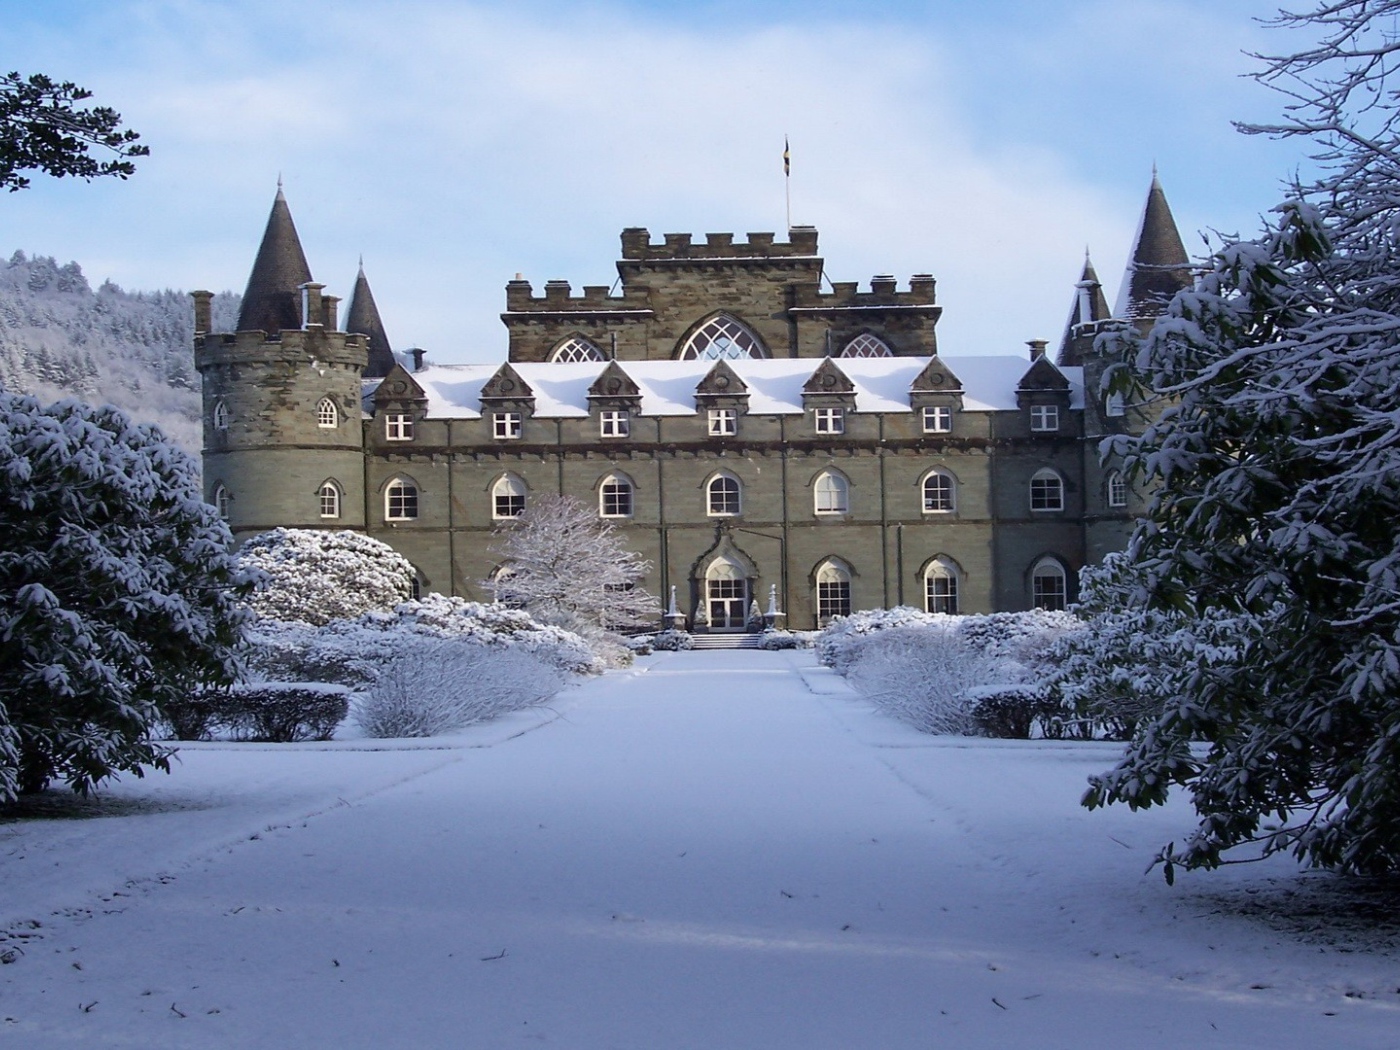 Snowy Castle in Scotland